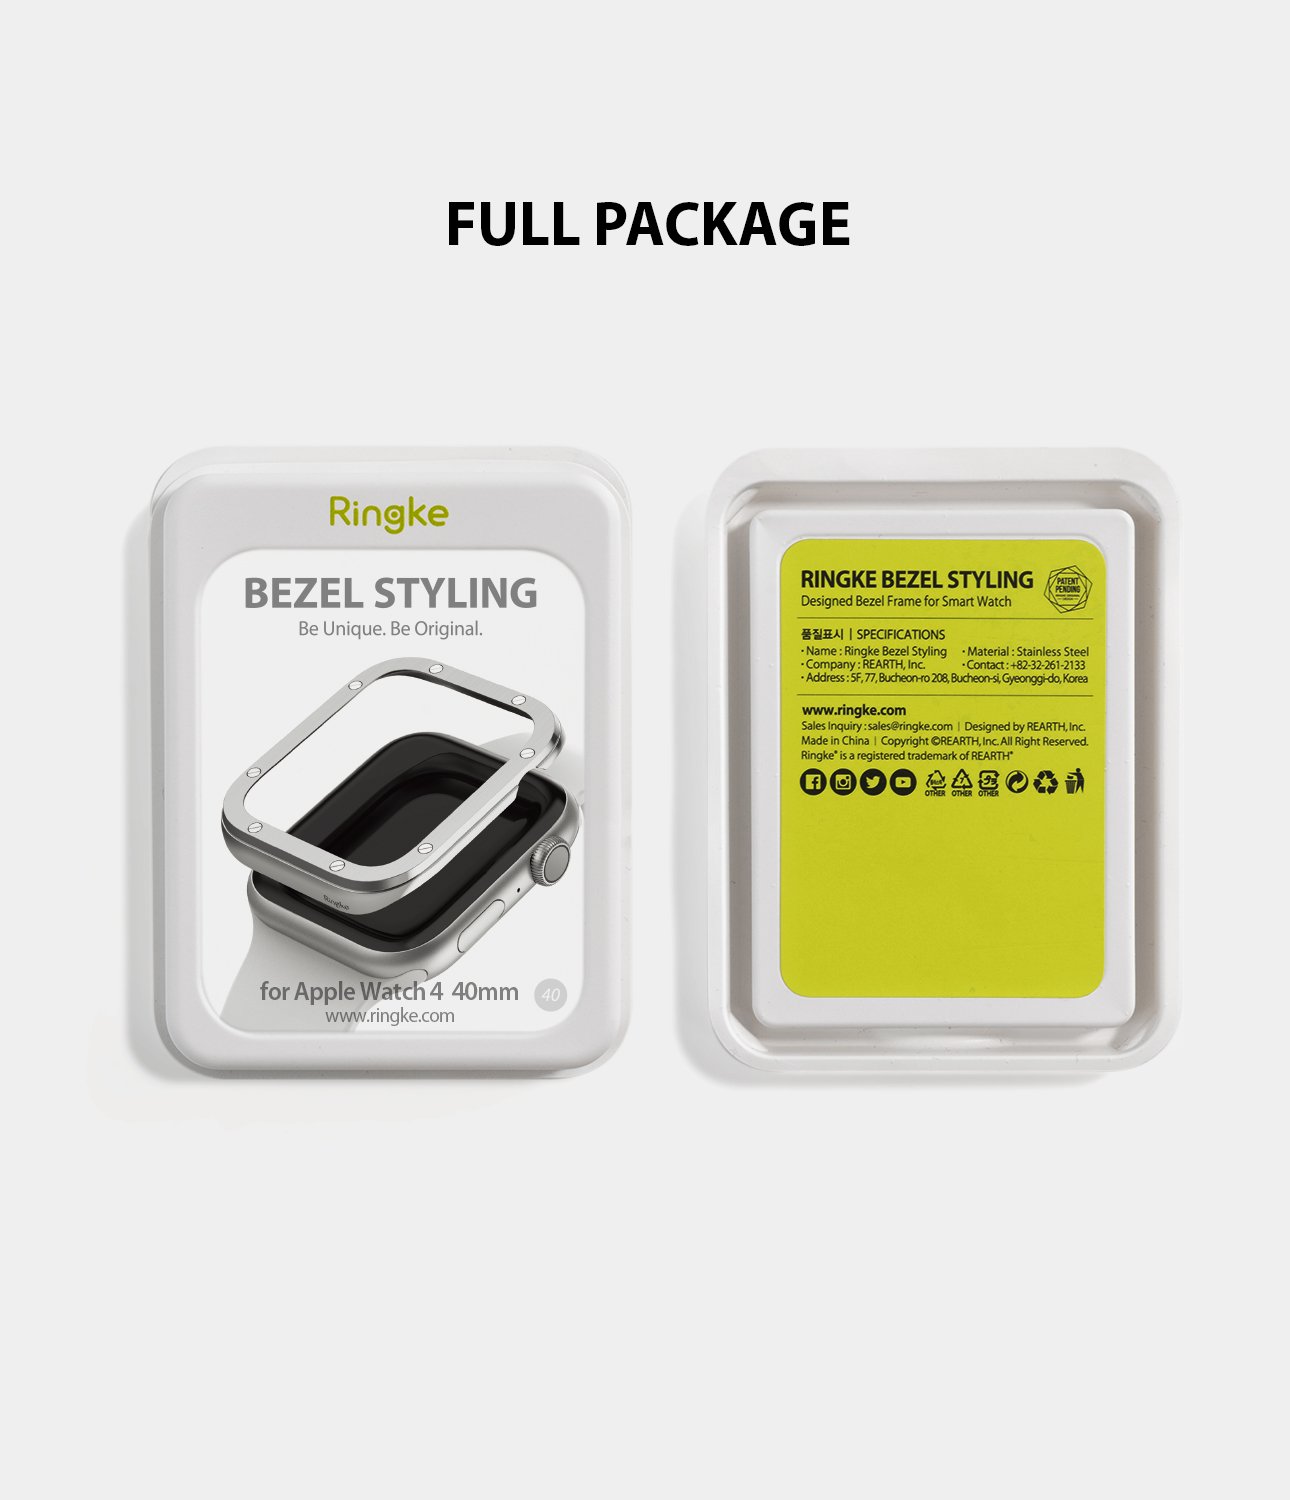 ringke bezel styling 40-40 stainless steel on apple watch series 6 / 5 / 4 / SE 40mm full package